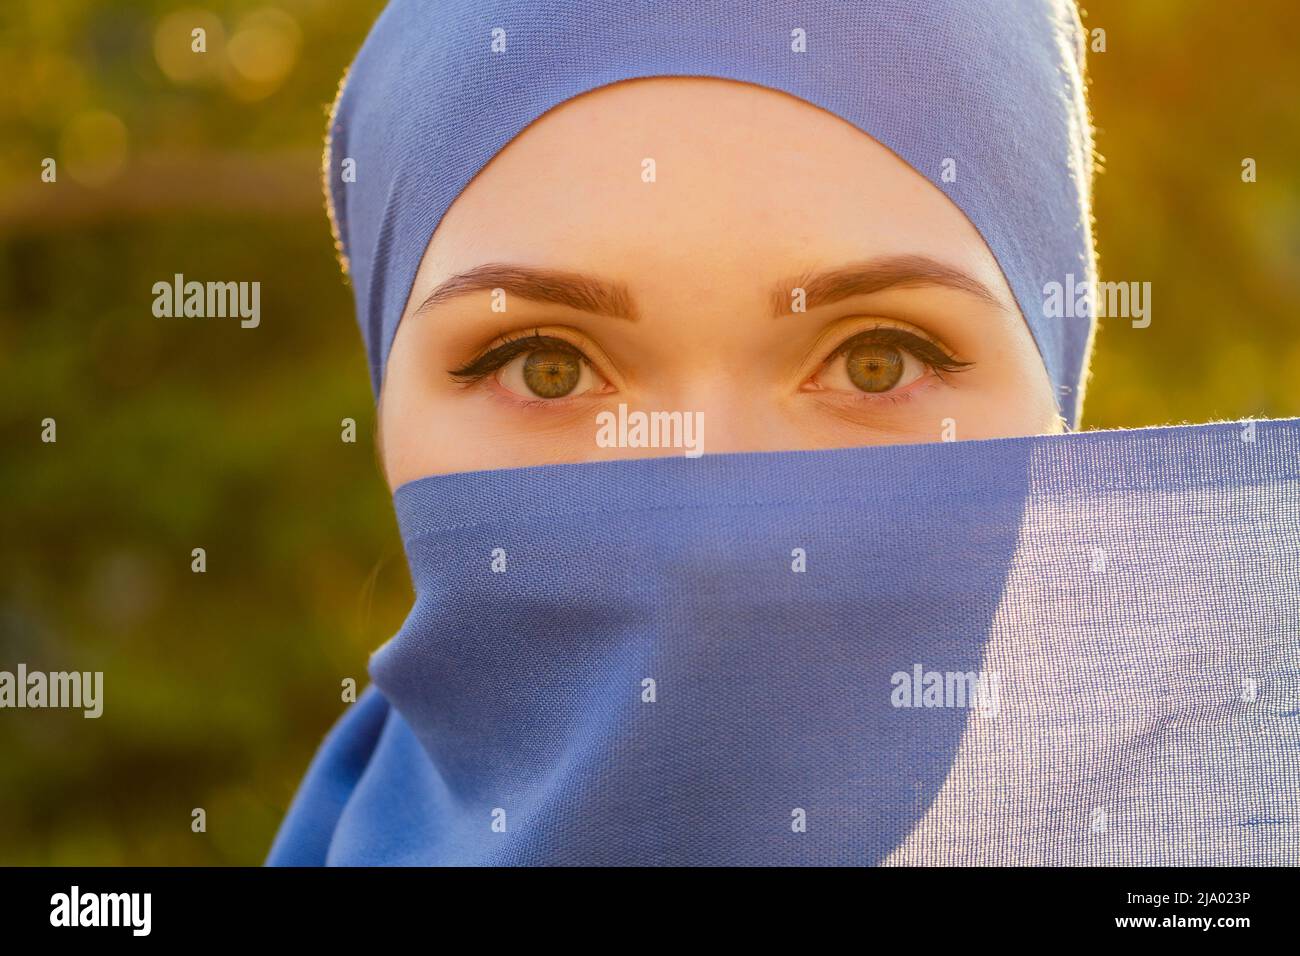 Retrato de una hermosa mujer musulmana con ojos verdes con cara de bufanda azul cerrada cubierta de árboles aveil fondo del bosque en el parque Foto de stock